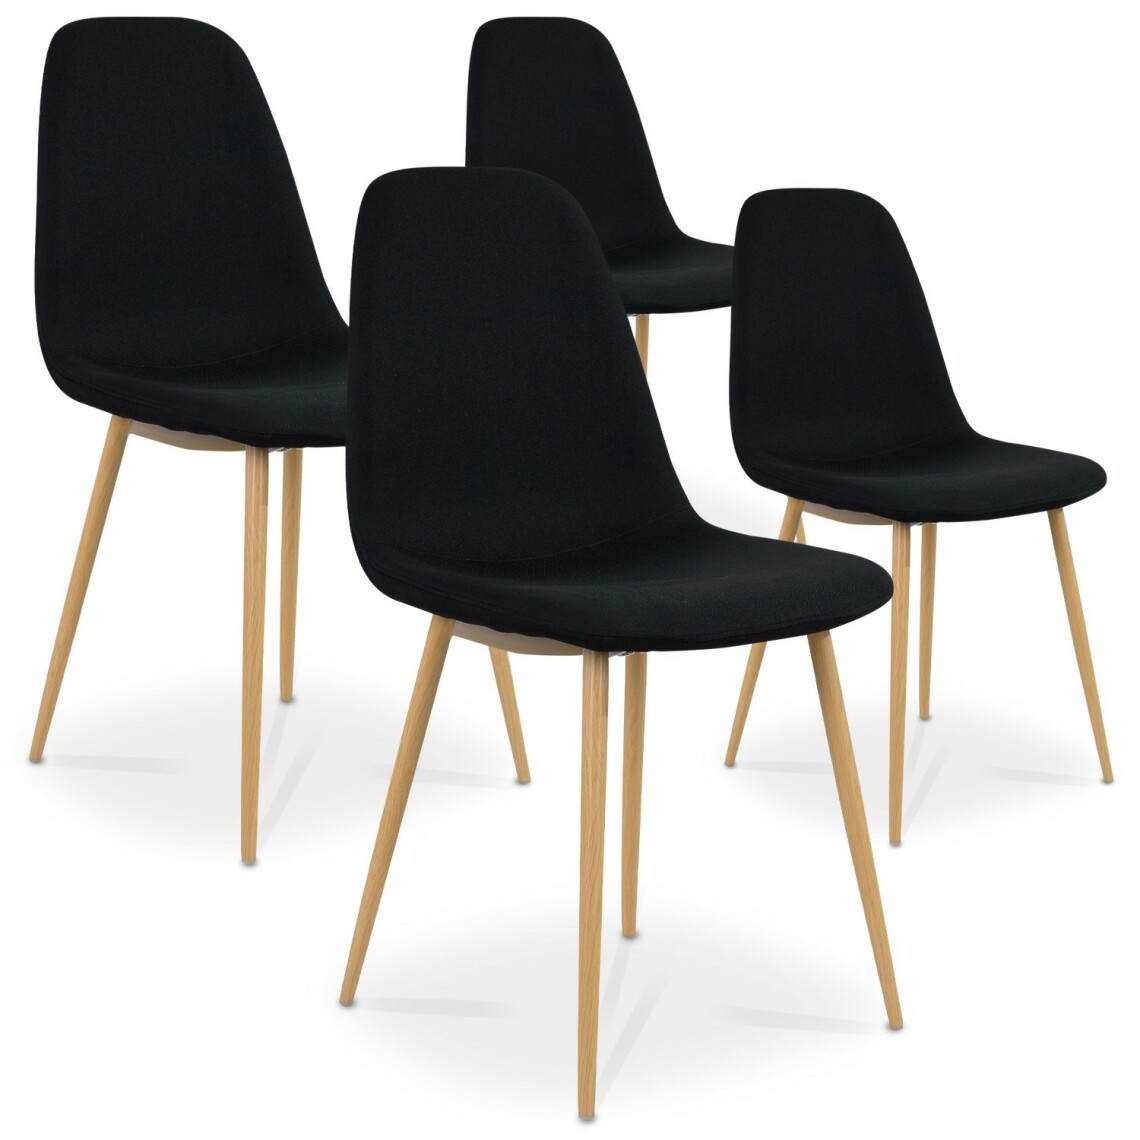 marque generique - Lot de 4 chaises scandinaves Bali tissu Noir - Chaises